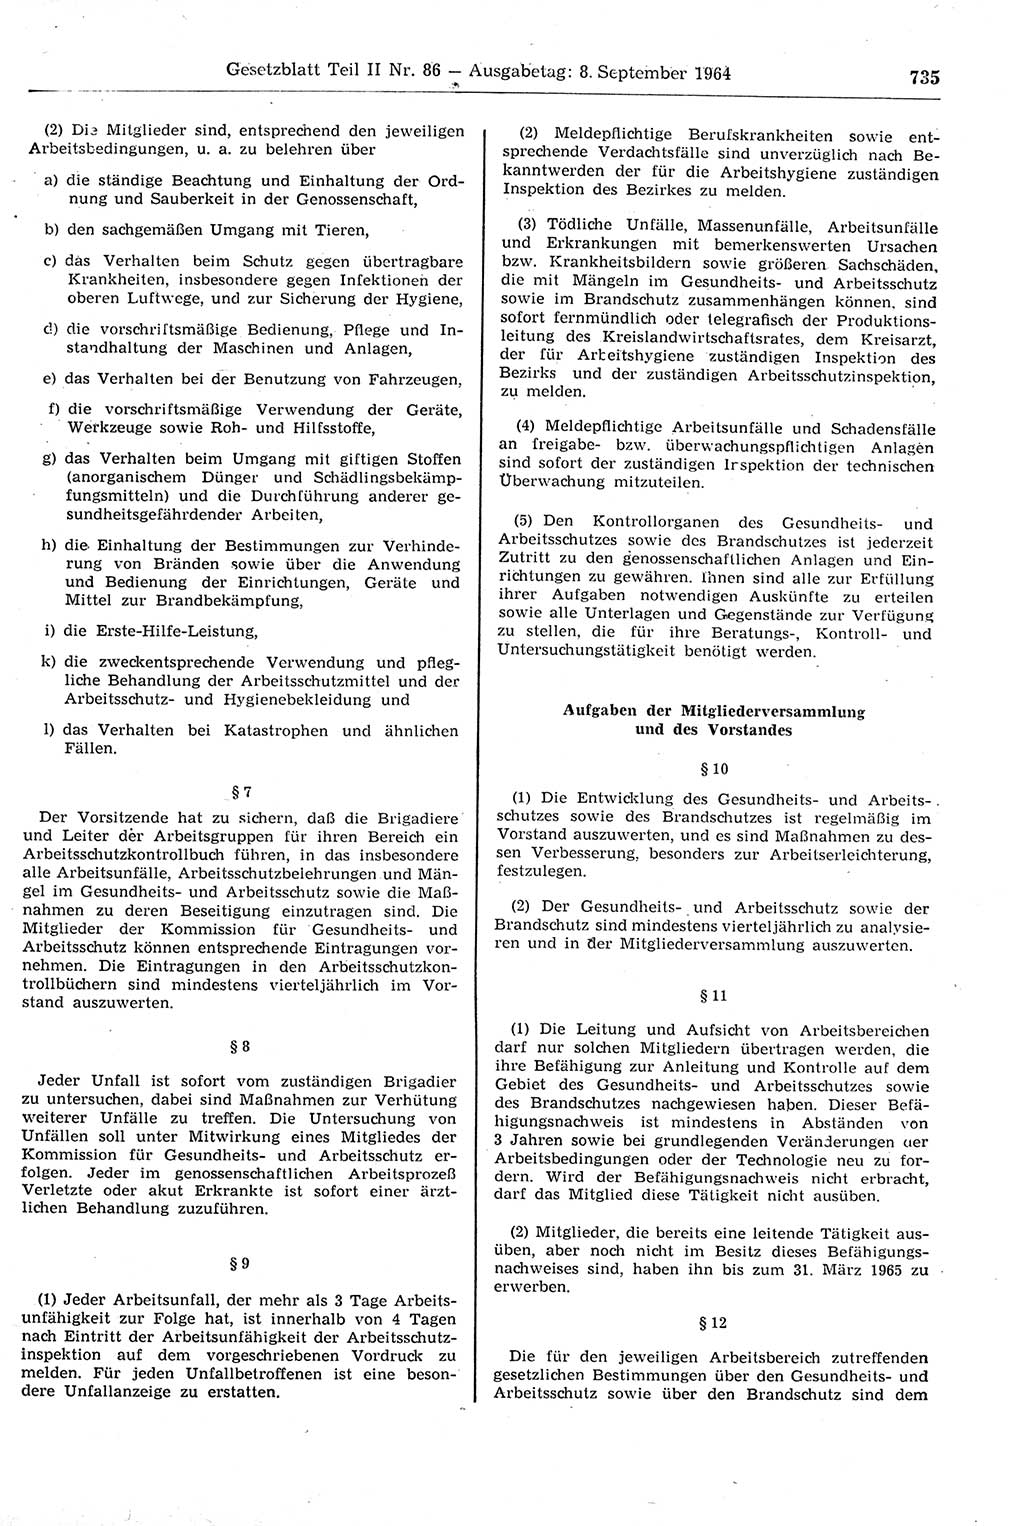 Gesetzblatt (GBl.) der Deutschen Demokratischen Republik (DDR) Teil ⅠⅠ 1964, Seite 735 (GBl. DDR ⅠⅠ 1964, S. 735)